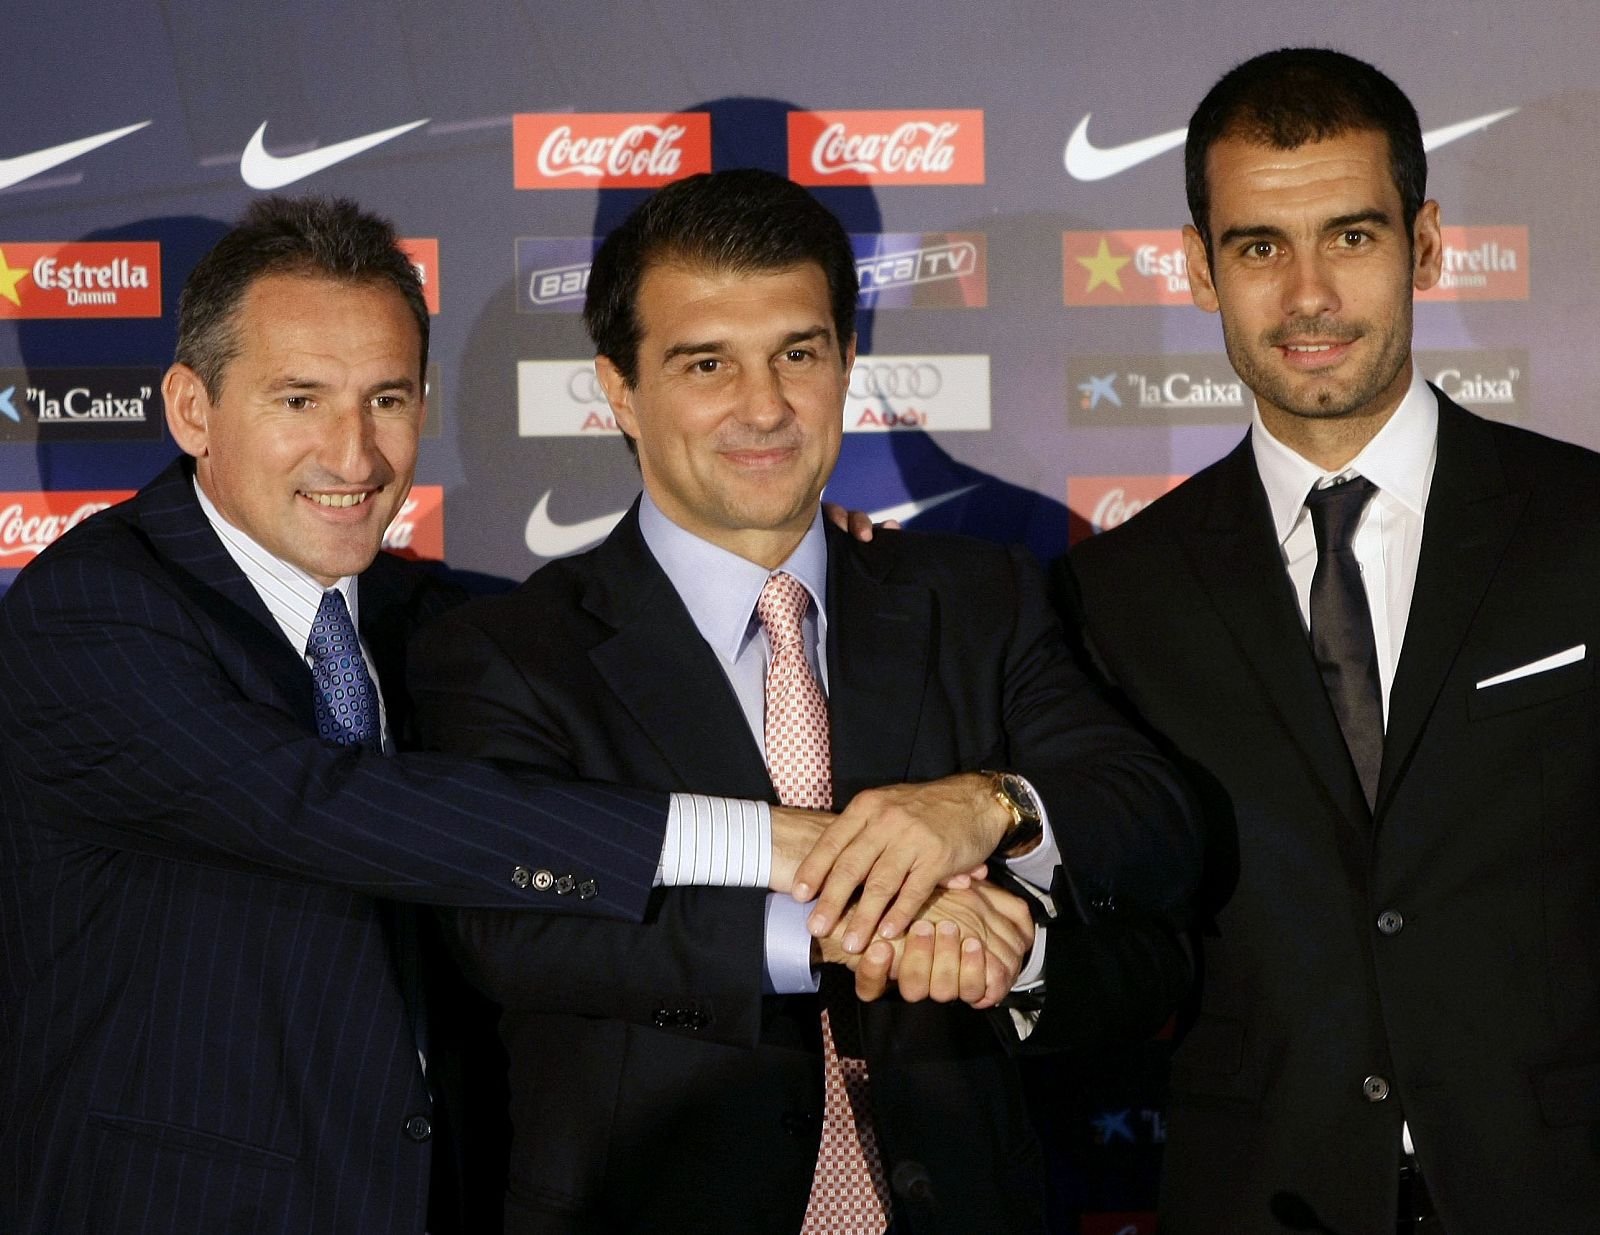 El Presidente del Barça, Joan Laporta, el secretario técnico, Txiki Beguiristain y el entrenador, Pep Guardiola, estrechan sus manos.